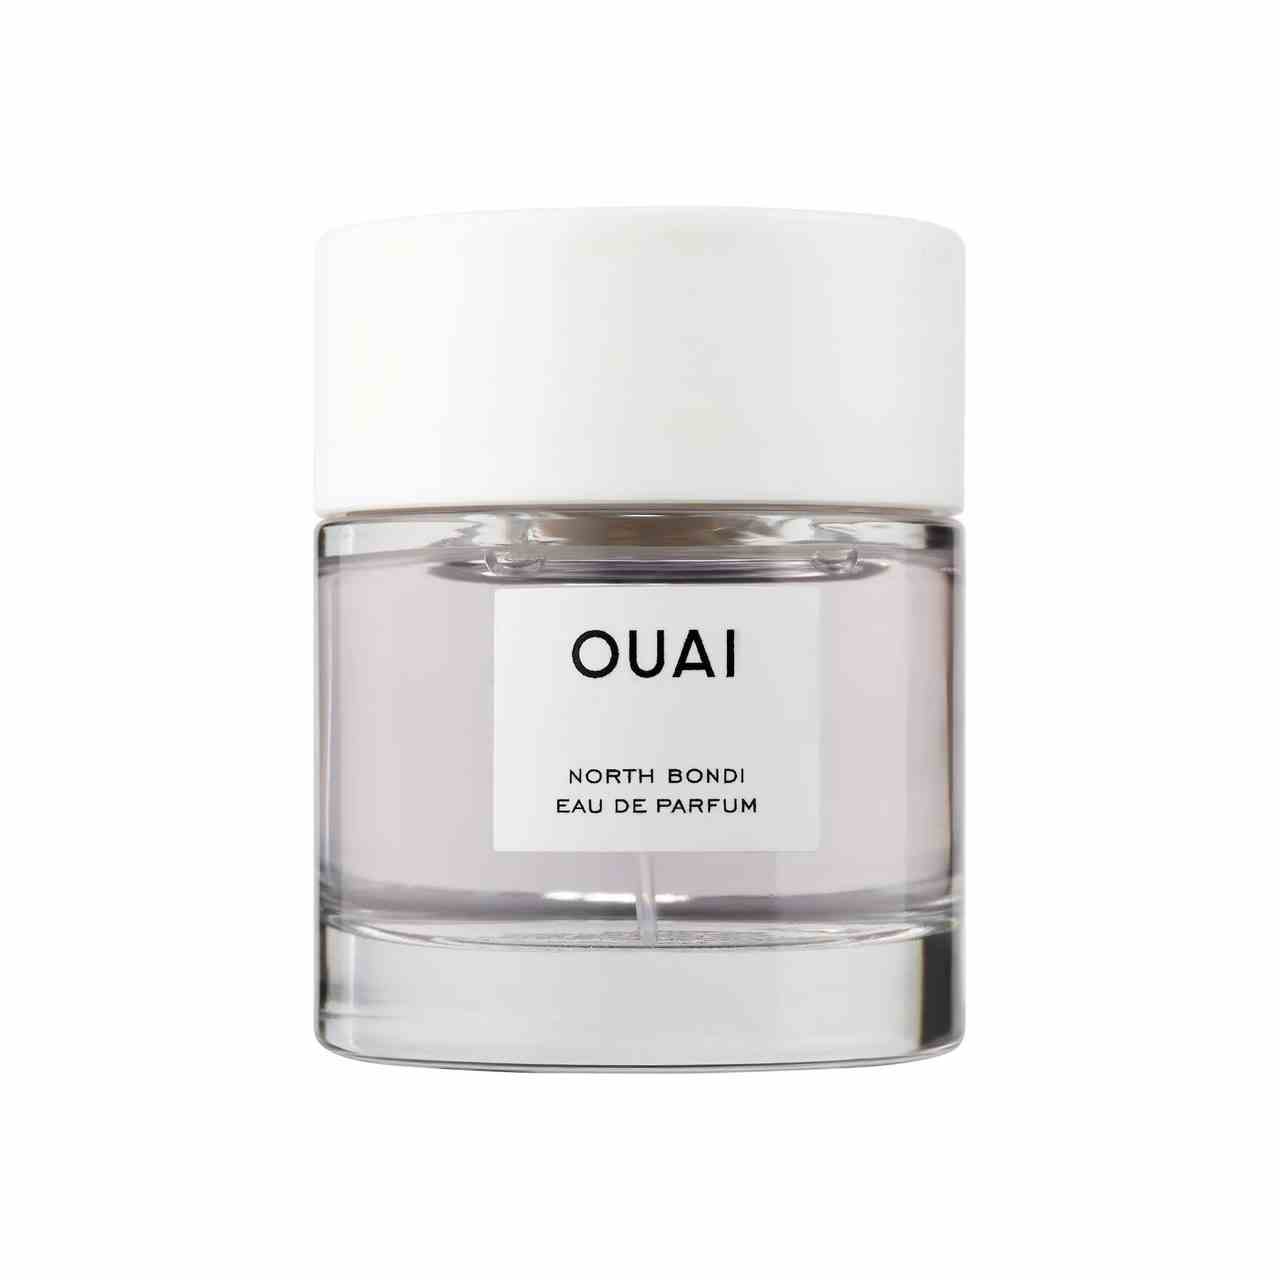 Ouai North Bondi Eau de Parfum Flasche Parfüm mit weißer Kappe auf weißem Hintergrund